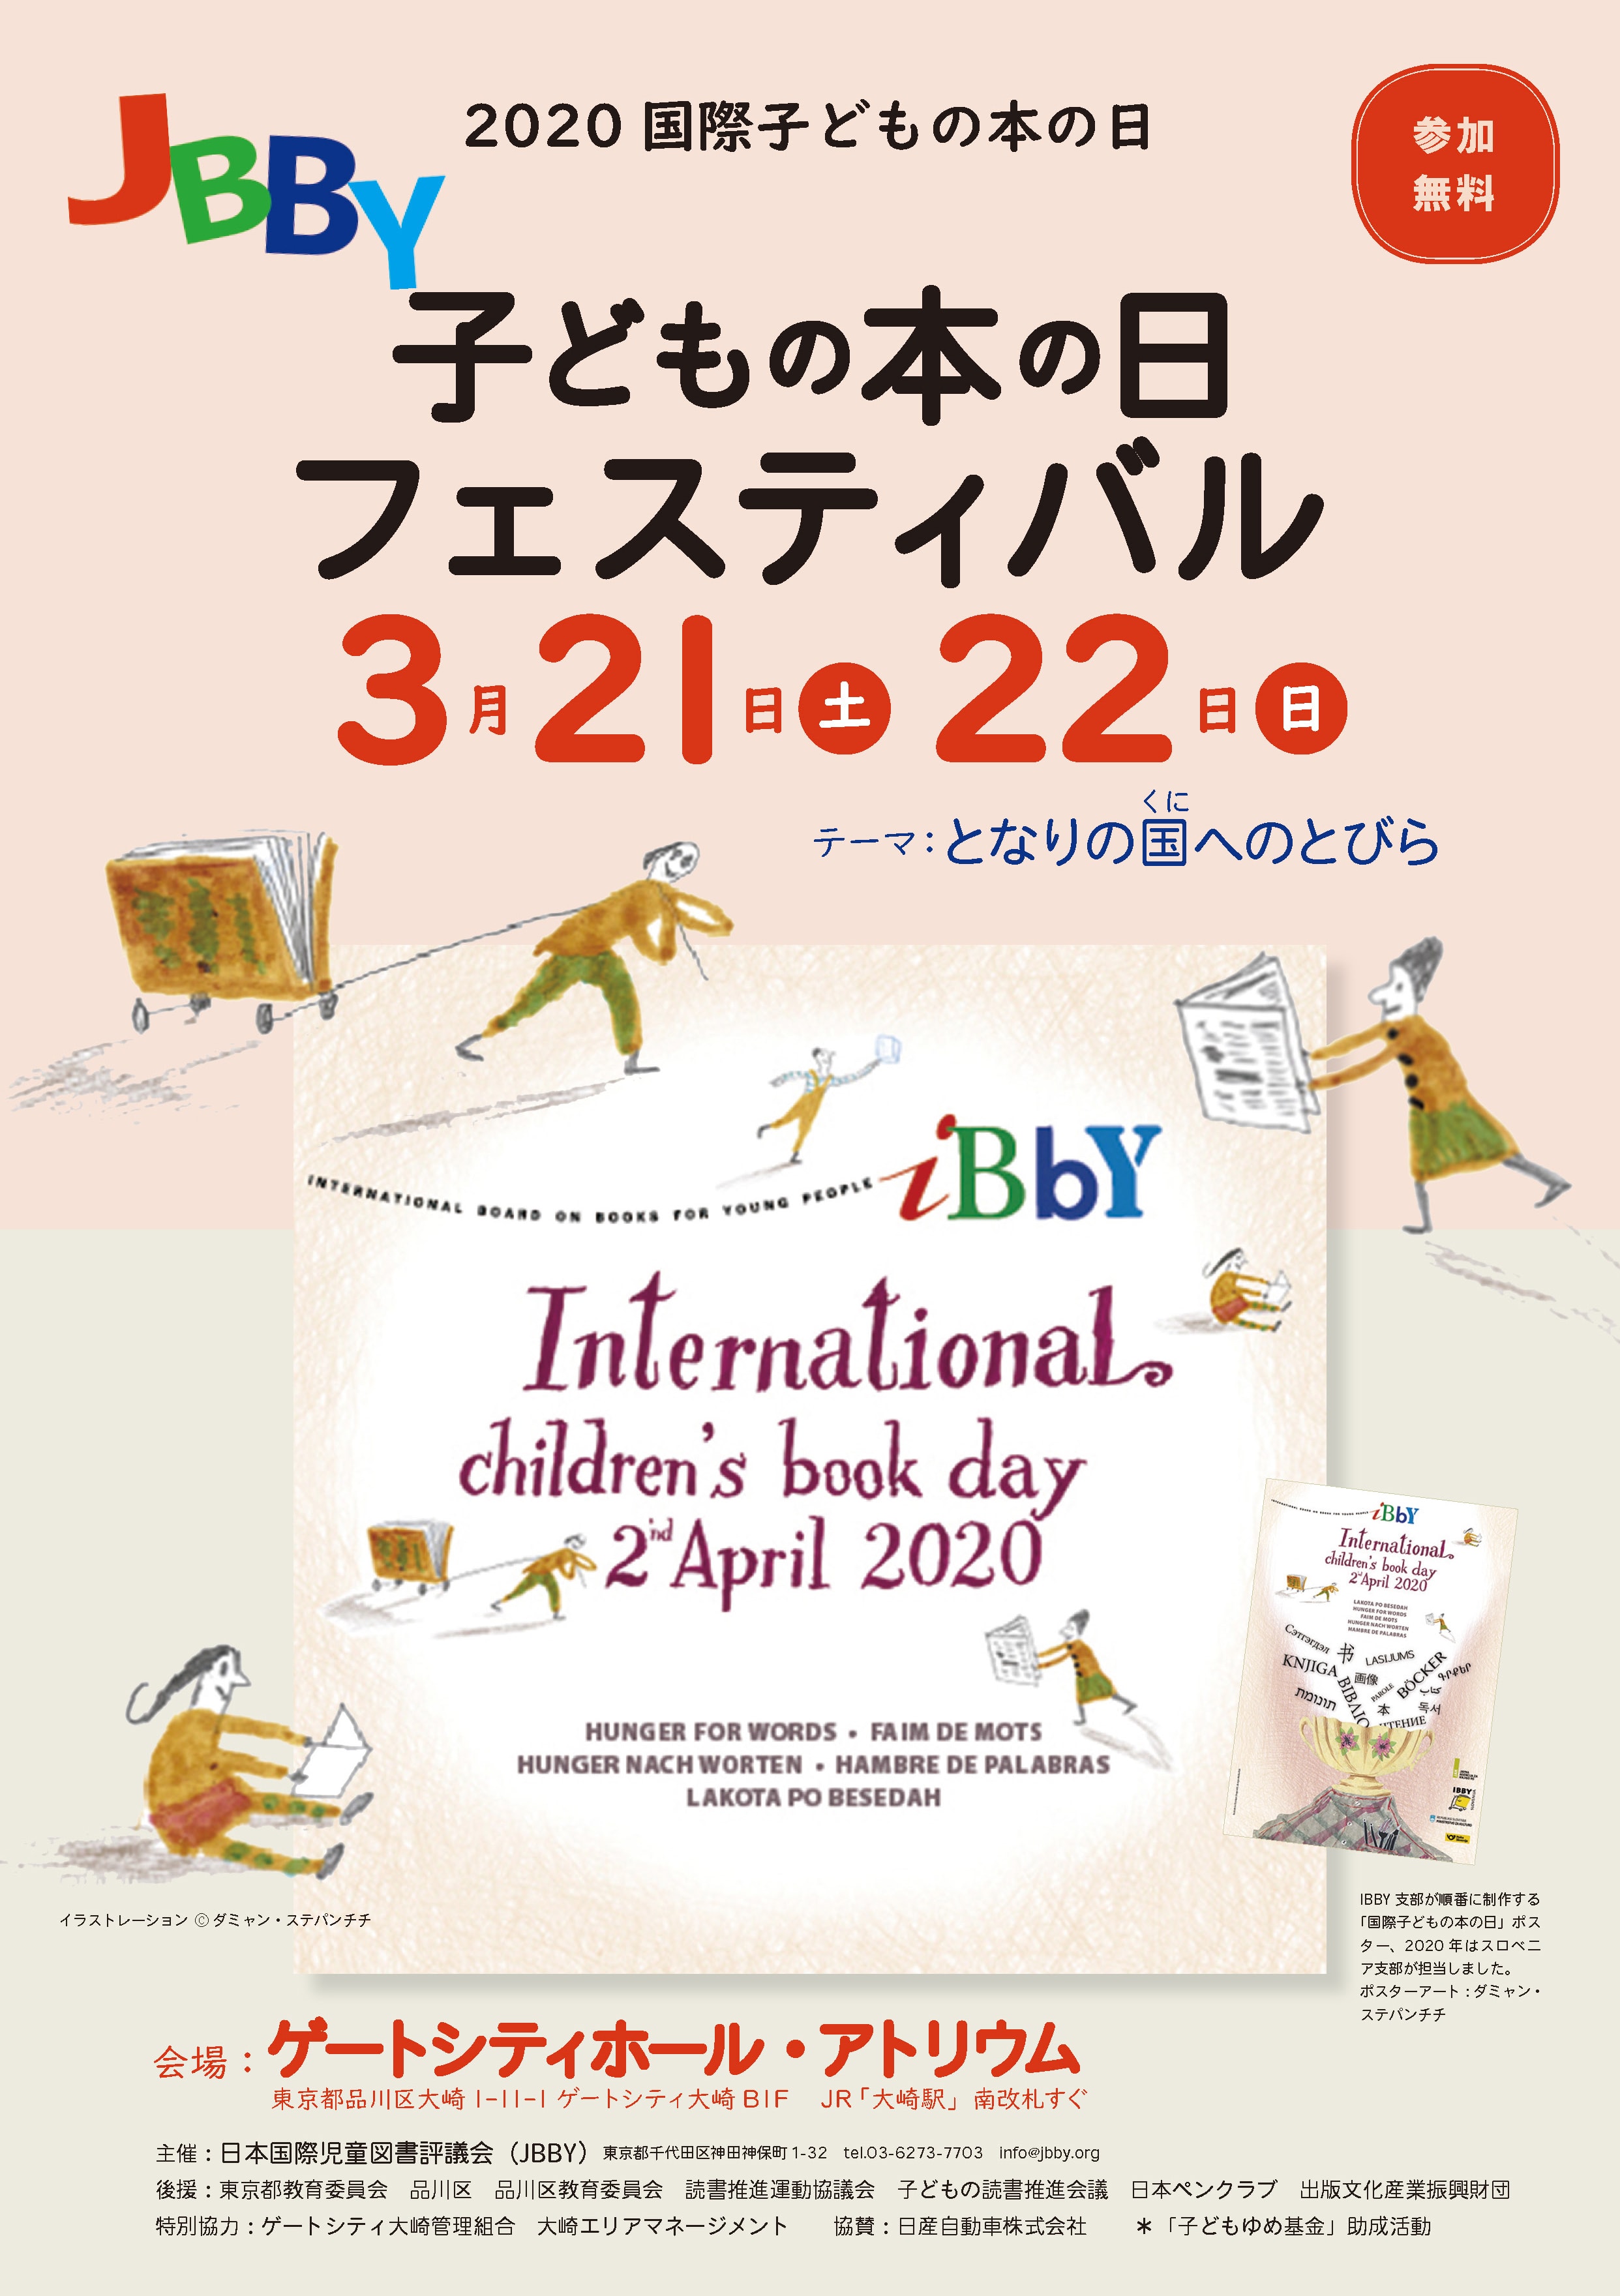 国際子どもの本の日記念 Jbby子どもの本の日フェスティバル バリアフリー絵本